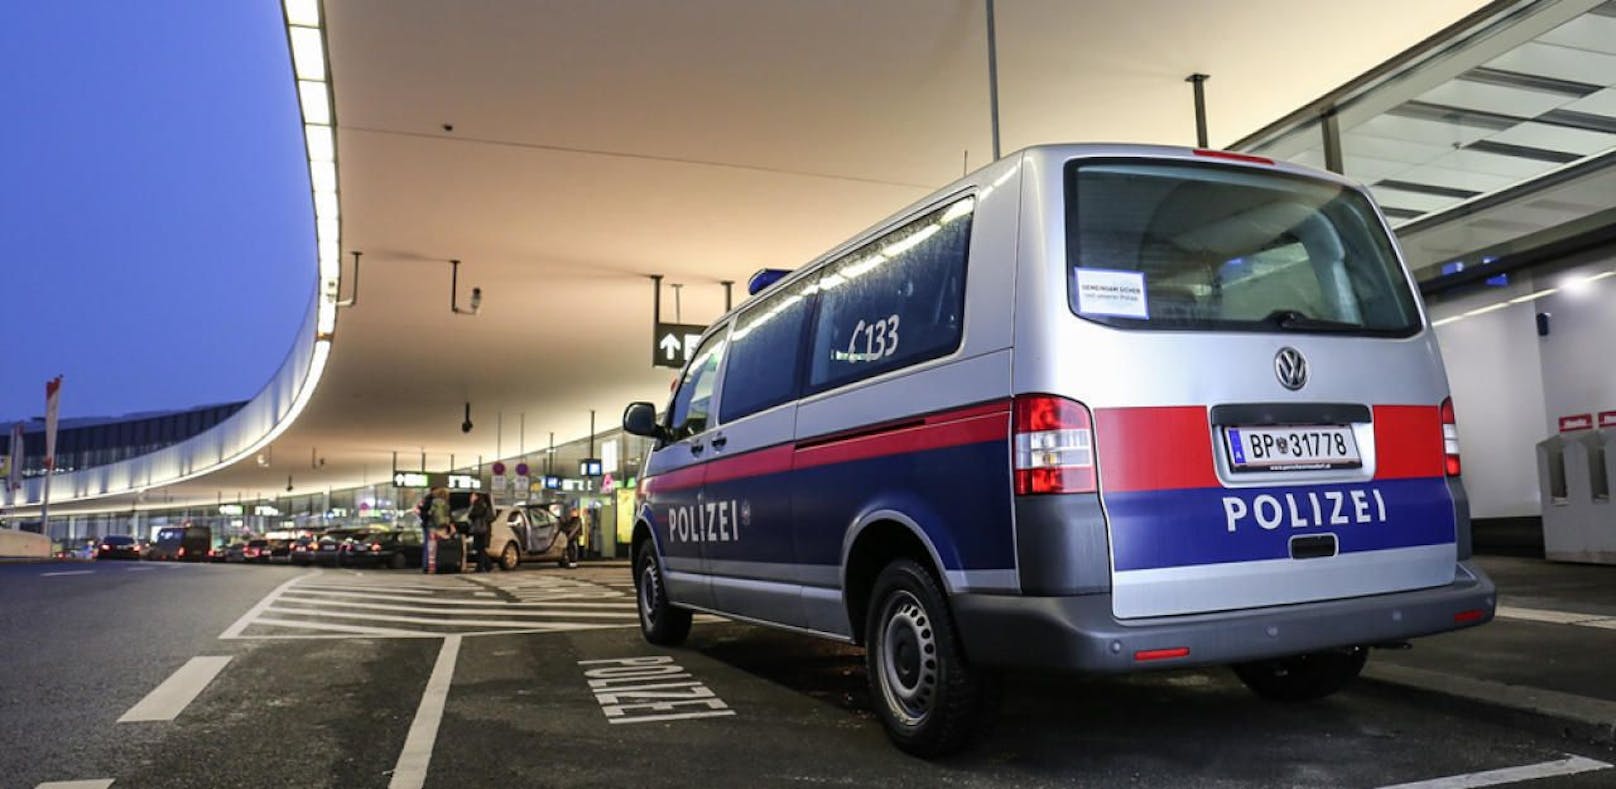 Polizei am Flughafen Wien-Schwechat. (Archivbild)